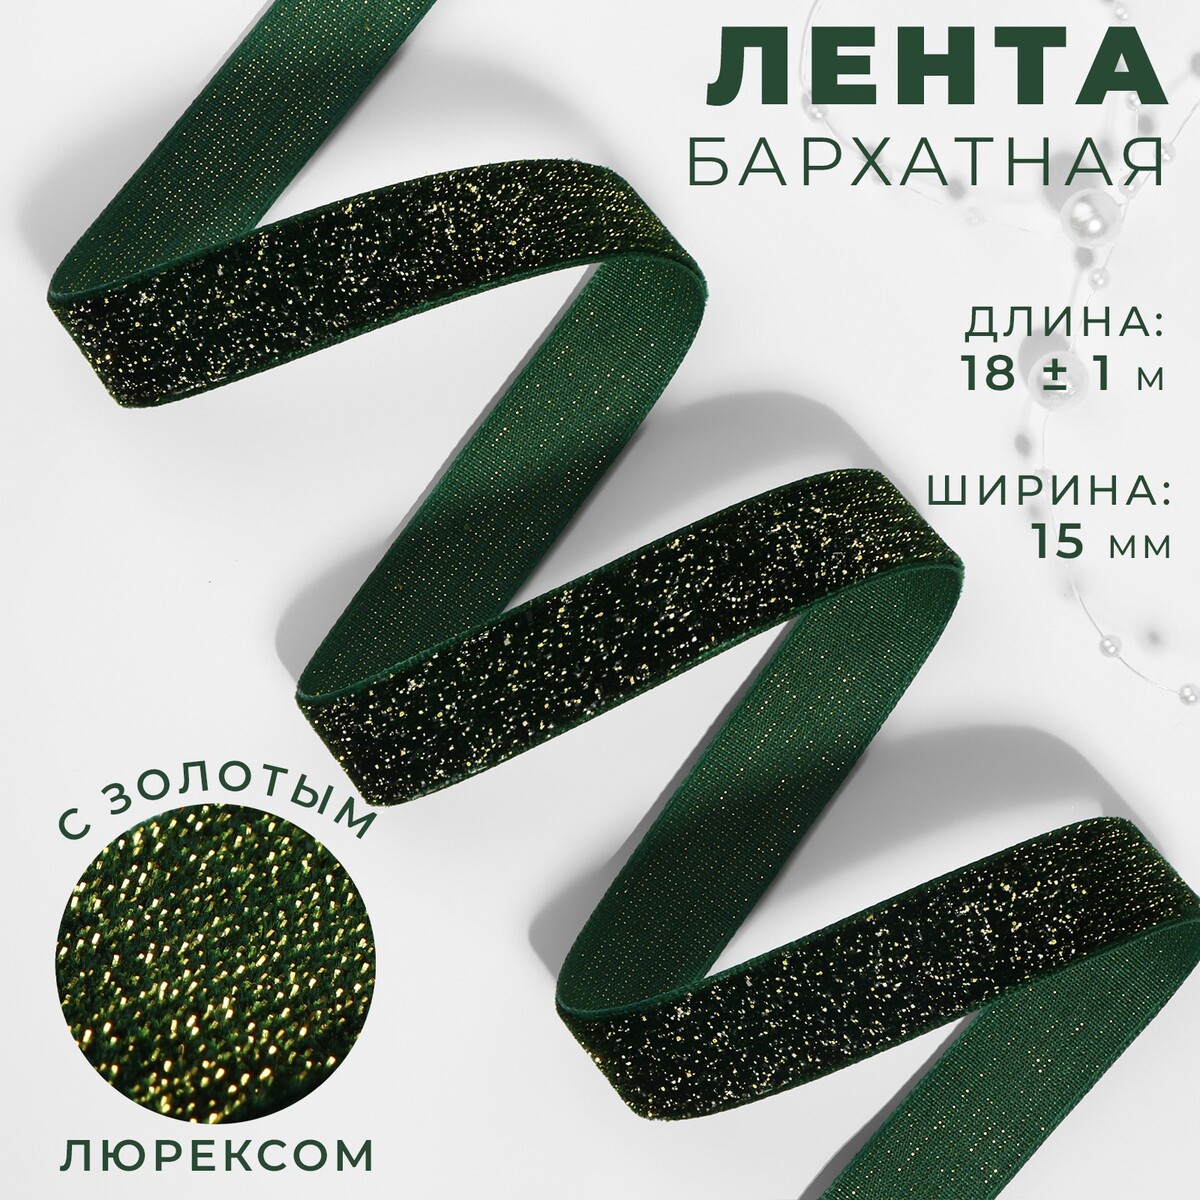 Лента бархатная, с золотым люрексом, 15 мм, 18 ± 1 м, цвет зеленый №165 кошелек на молнии зеленый разно ный